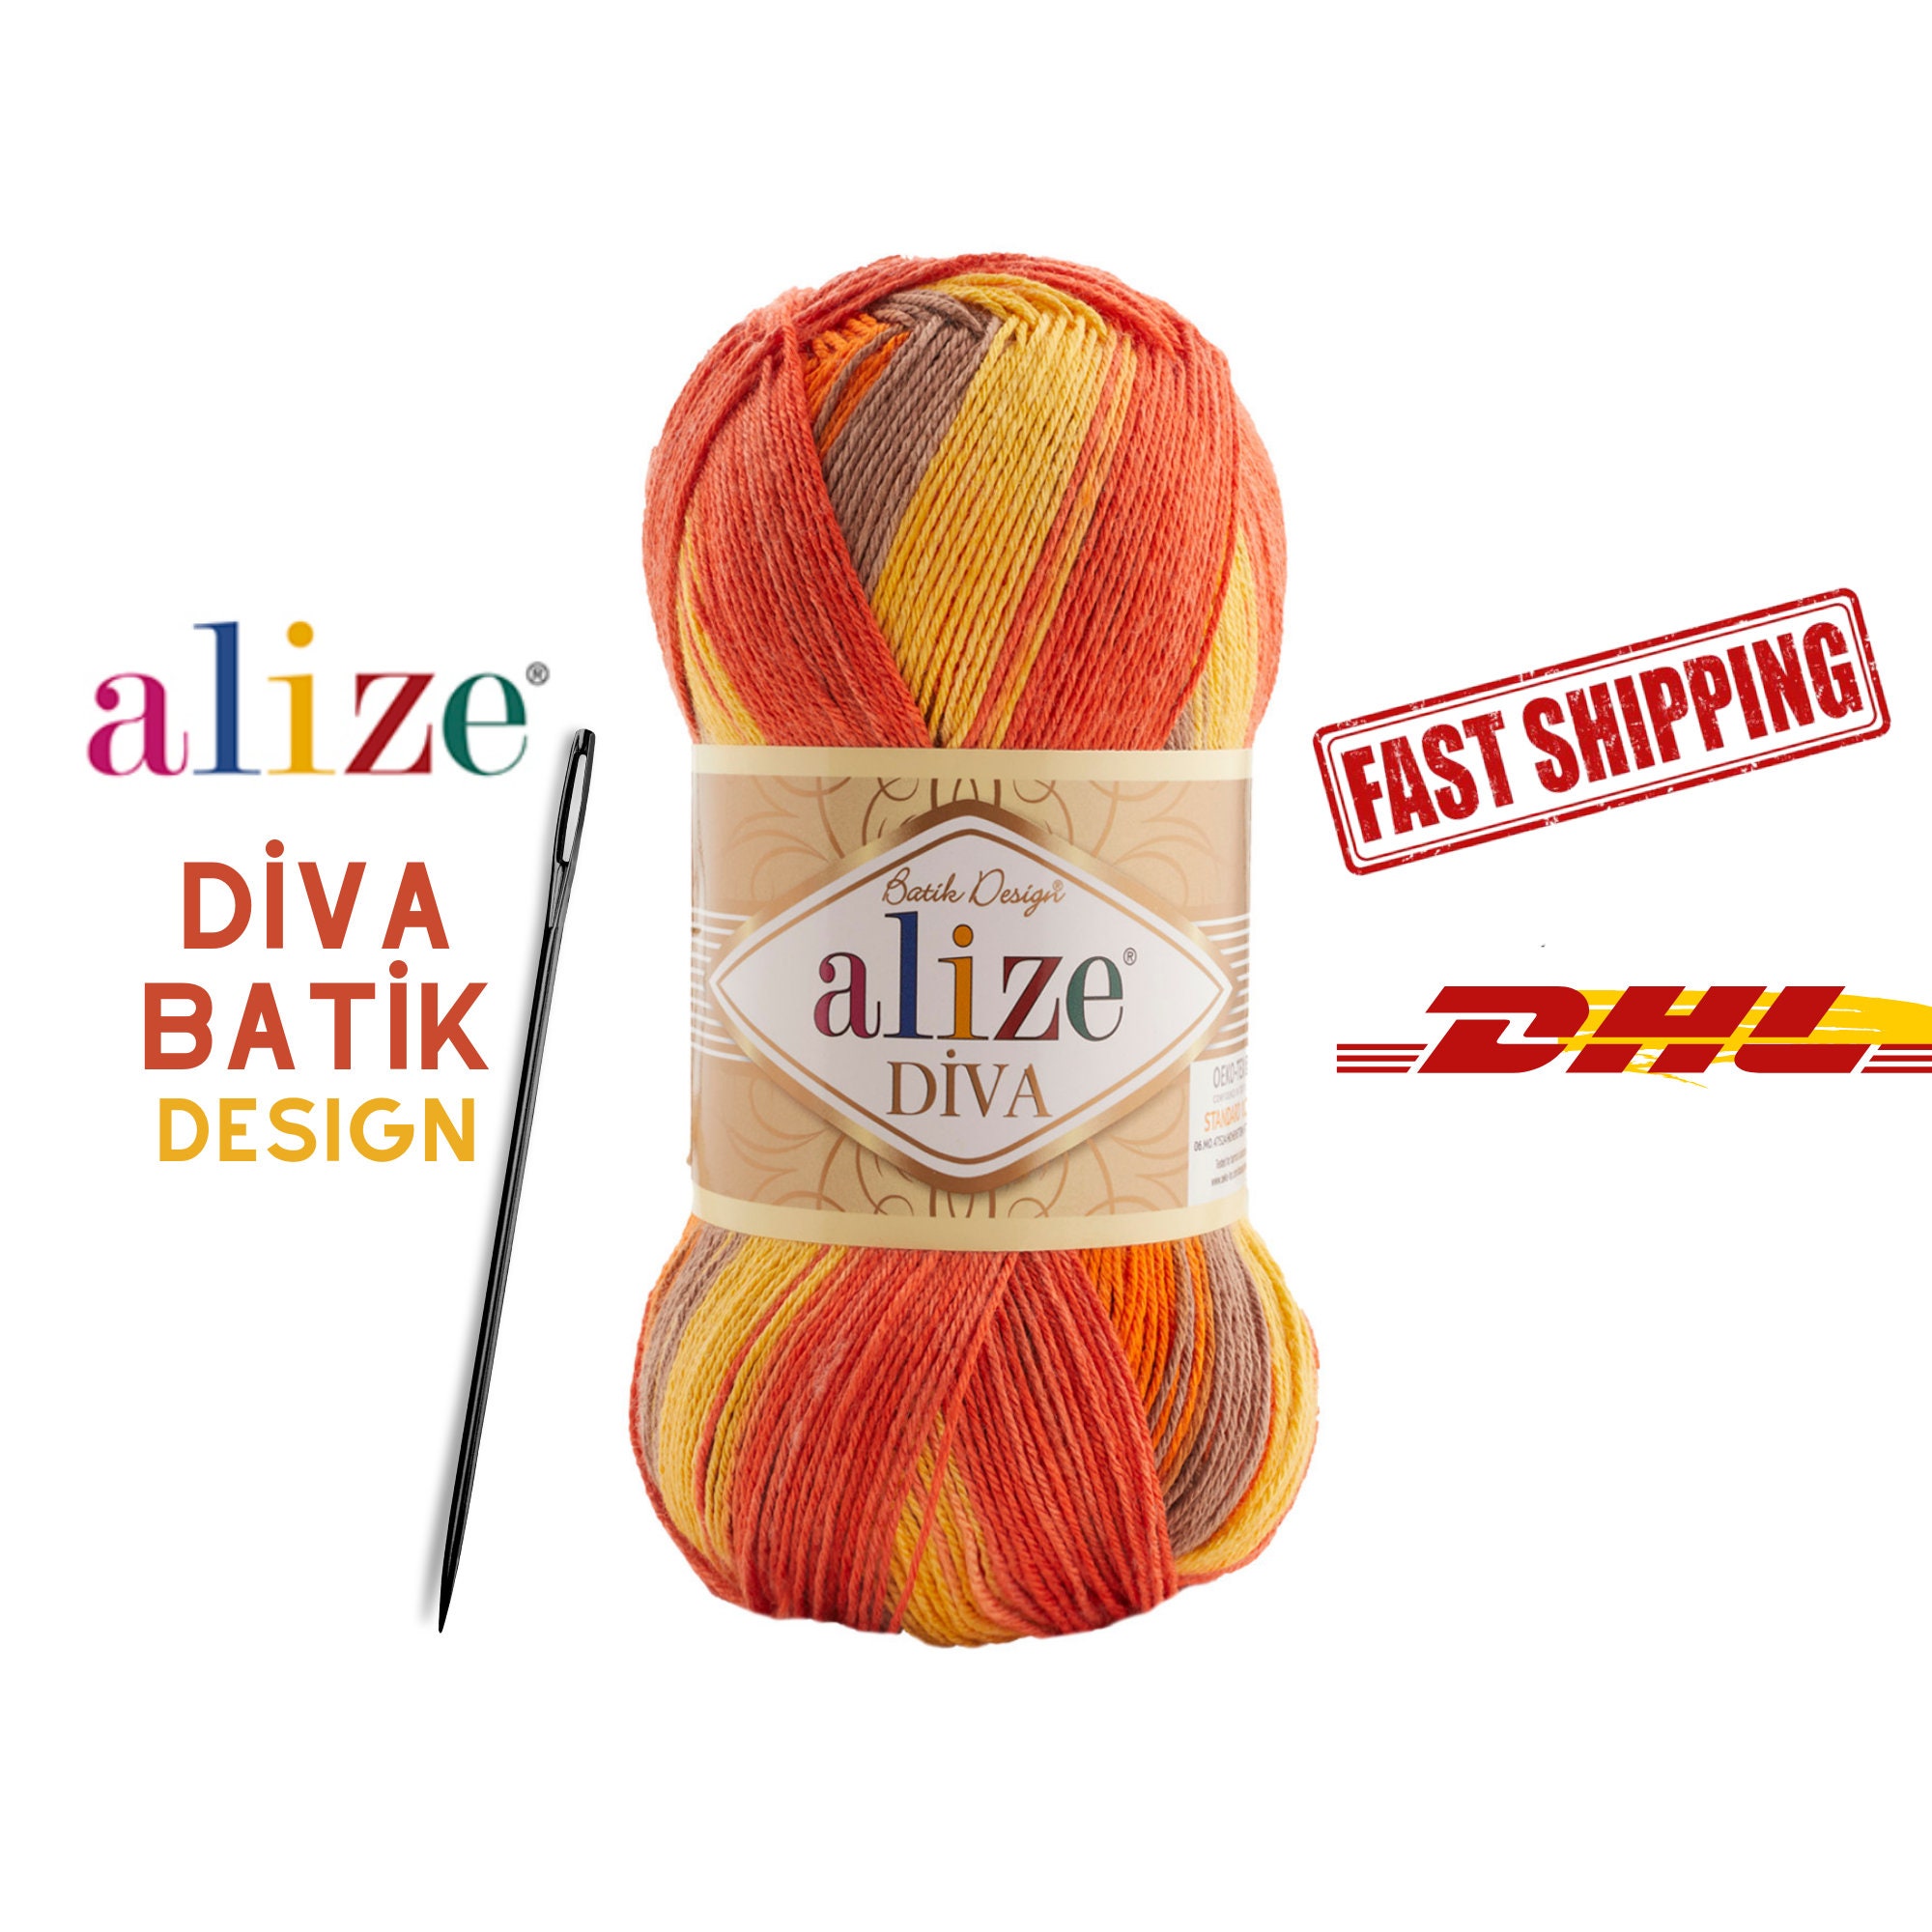 Perfect SHOP — Alize COTTON GOLD Batik Design color: 4531 High